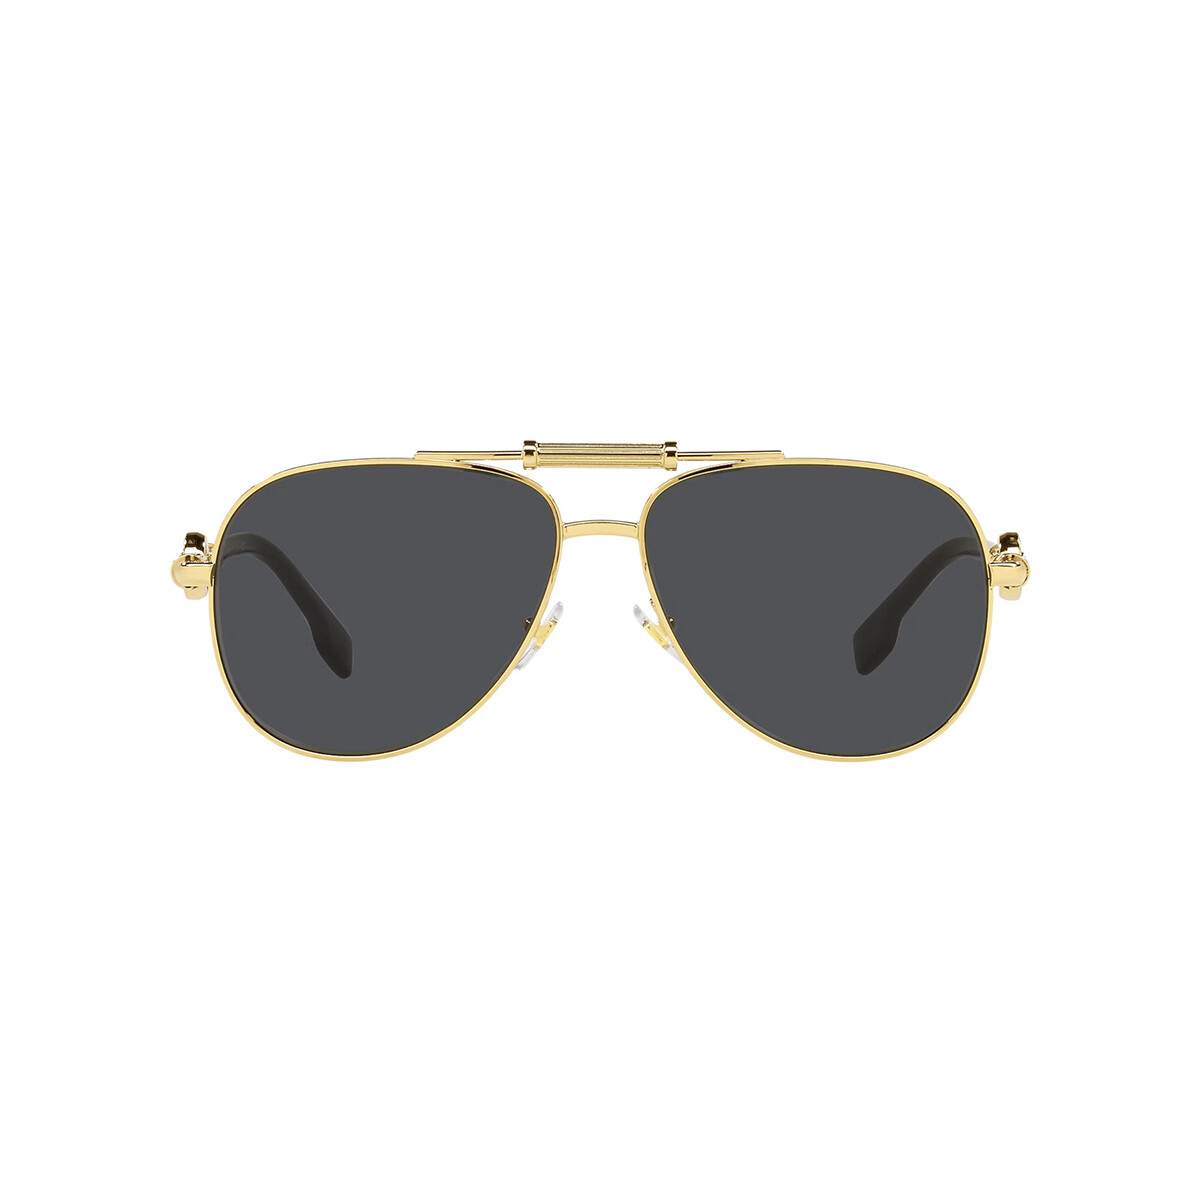 Orologi & Gioielli Occhiali da sole Versace VE2236 Occhiali da sole, Oro/Grigio scuro, 59 mm Oro